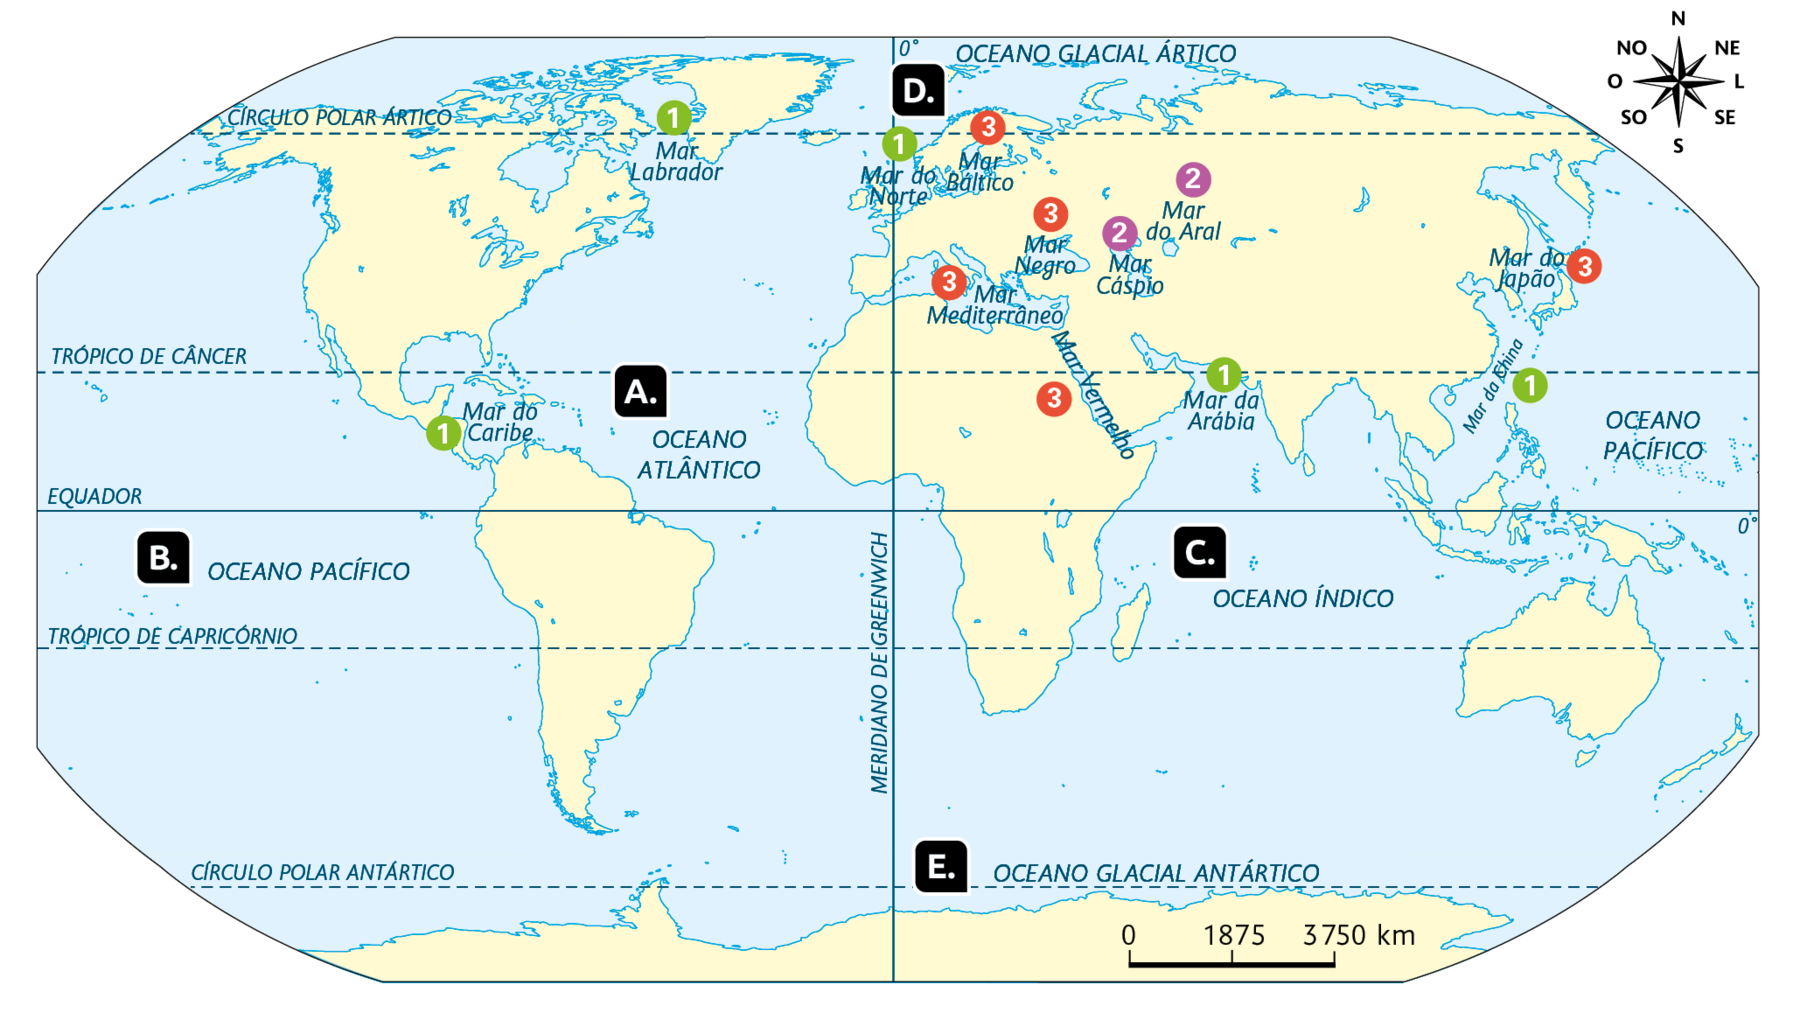 Planisfério. Oceanos e mares (2018). 
Os oceanos estão indicados os oceanos com letras: Letra A, Oceano Atlântico. Letra B, Oceano Pacífico. Letra C, Oceano Índico. Letra D, Oceano Glacial Ártico. Letra E, Oceano Glacial Antártico. Os mares estão indicados com números: Número 1 para mar aberto: Mar da Arábia; Mar da China; Mar do Norte; Mar Labrador. Número 2 para mar fechado: Mar do Aral; Mar Cáspio. Número 3 para mar interior: Mar Báltico; Mar Mediterrâneo; Mar Negro; Mar do Japão. No canto superior direito, a rosa dos ventos, e na parte inferior, a escala: 1875 quilômetros por centímetro.